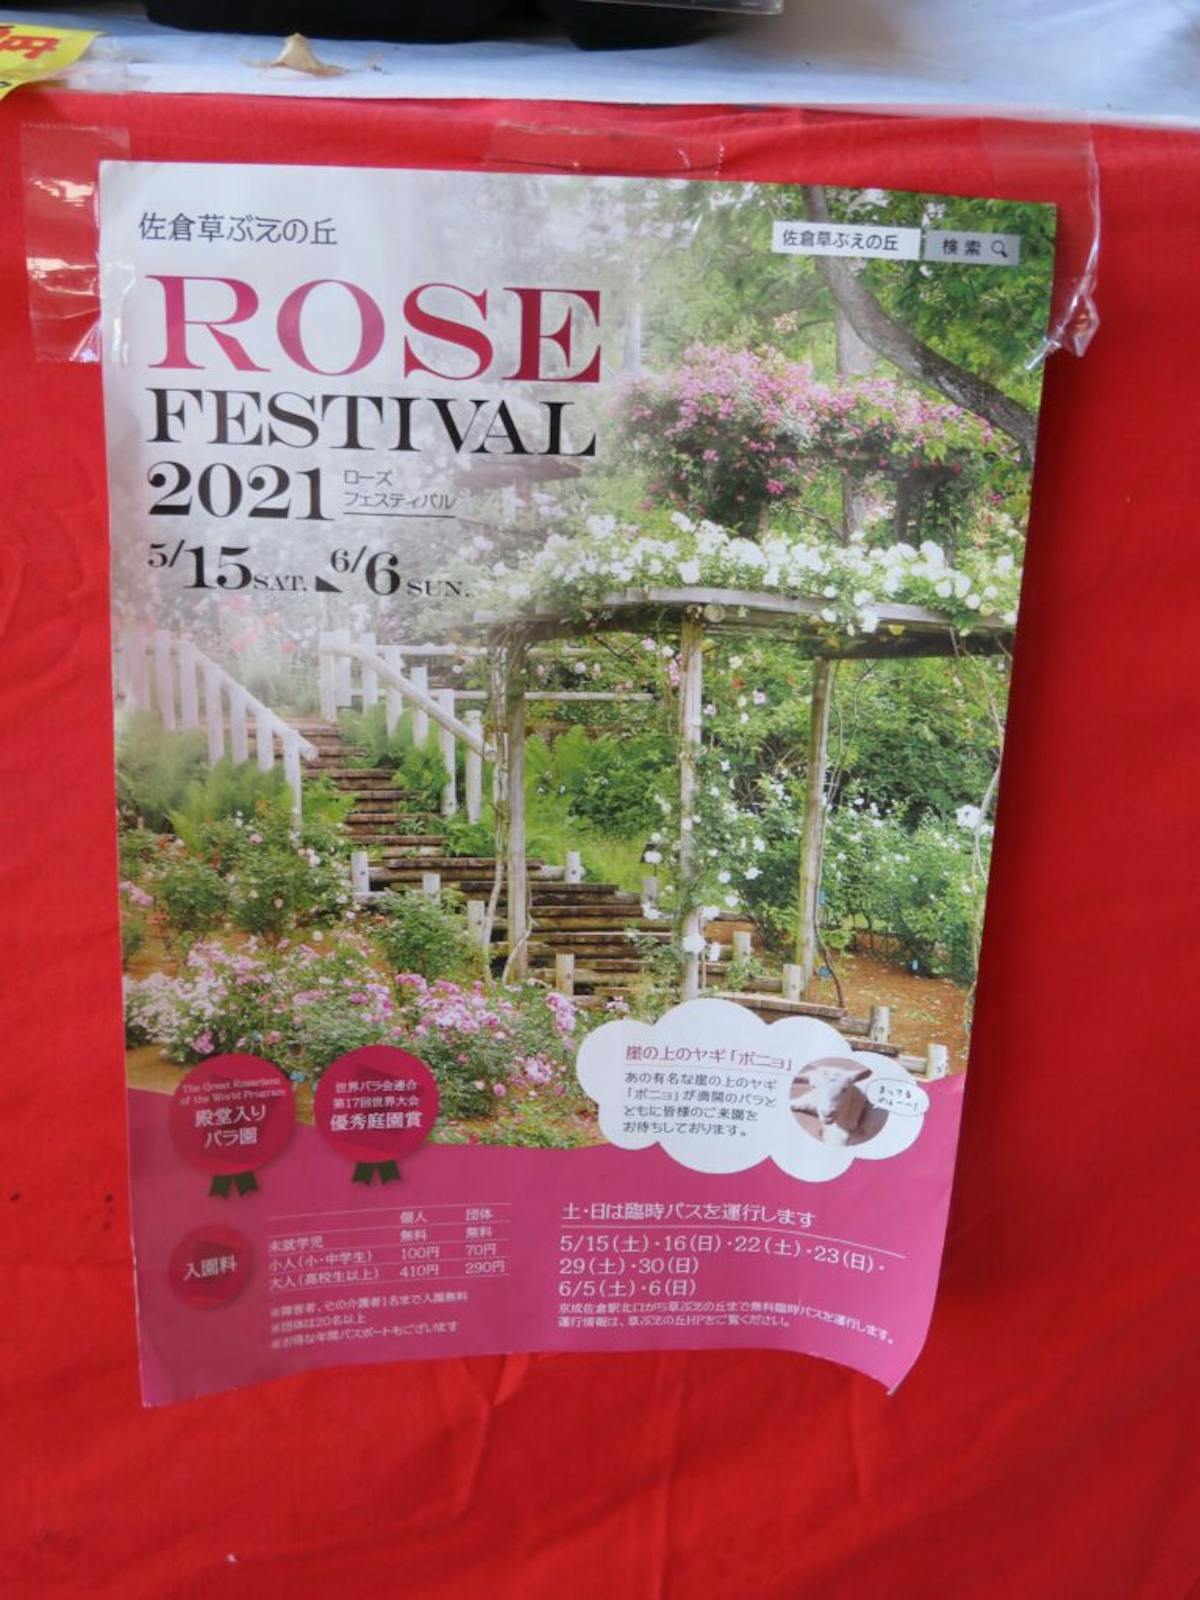 佐倉ローズフェスティバルが開催中 世界で評価されるバラの種類は オマツリジャパン あなたと祭りをつなげるメディア